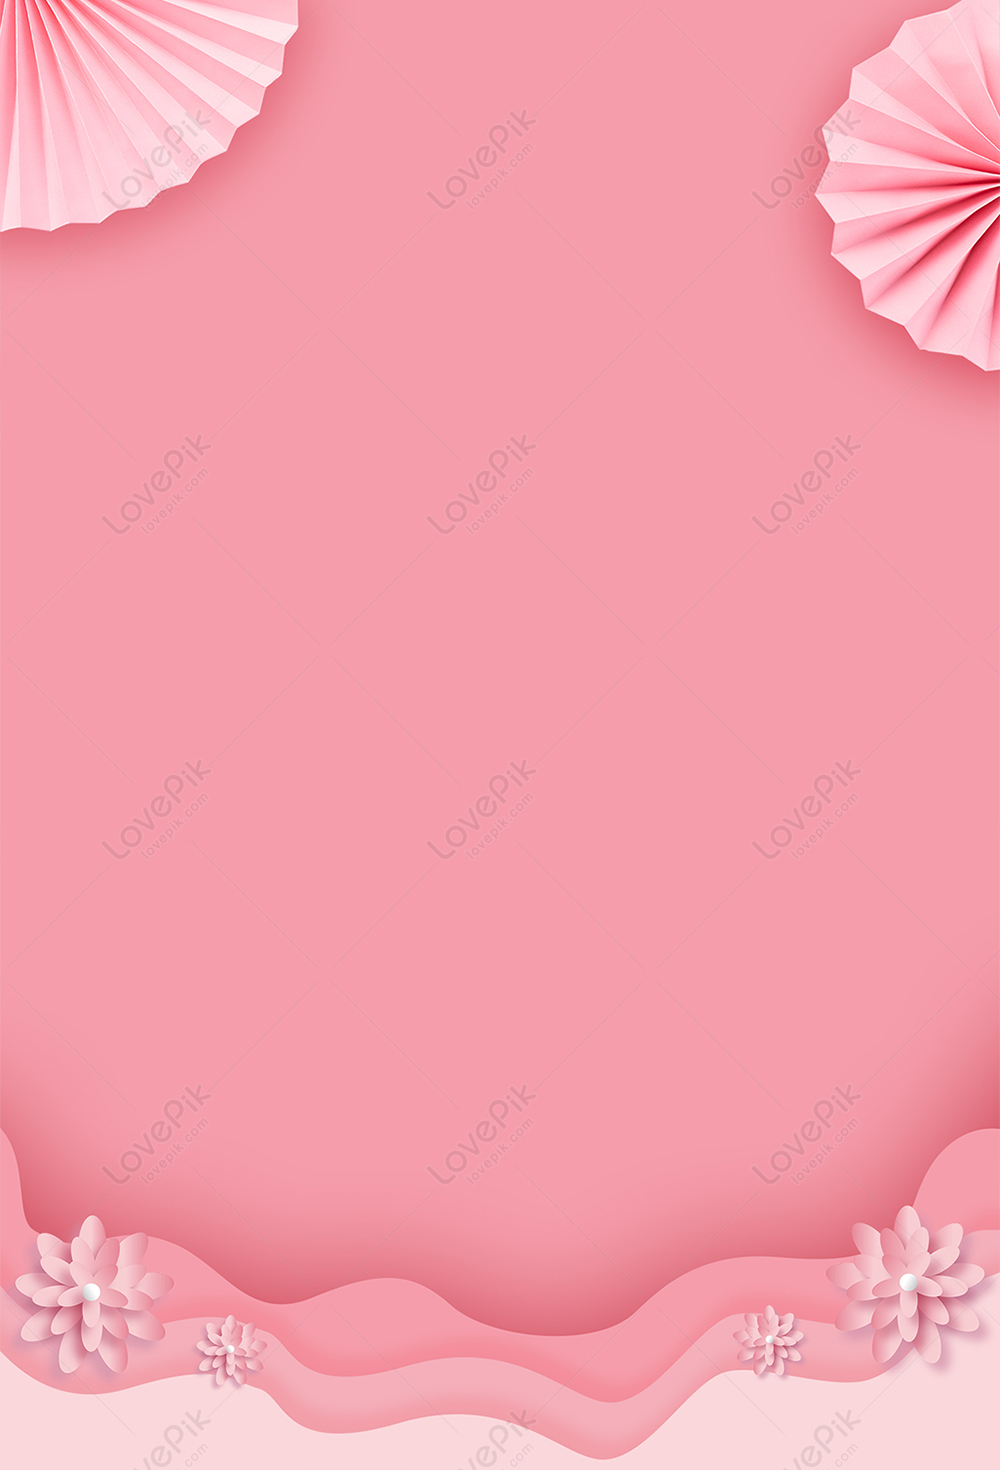 Hình nền đẹp màu hồng chắc chắn làm cho mọi người phải chú ý. Với những nét thiết kế tinh tế và màu sắc trang nhã, hình nền màu hồng sẽ tạo cảm giác thư giãn và thoải mái. Bạn sẽ không thể hàn gắn với nó được.